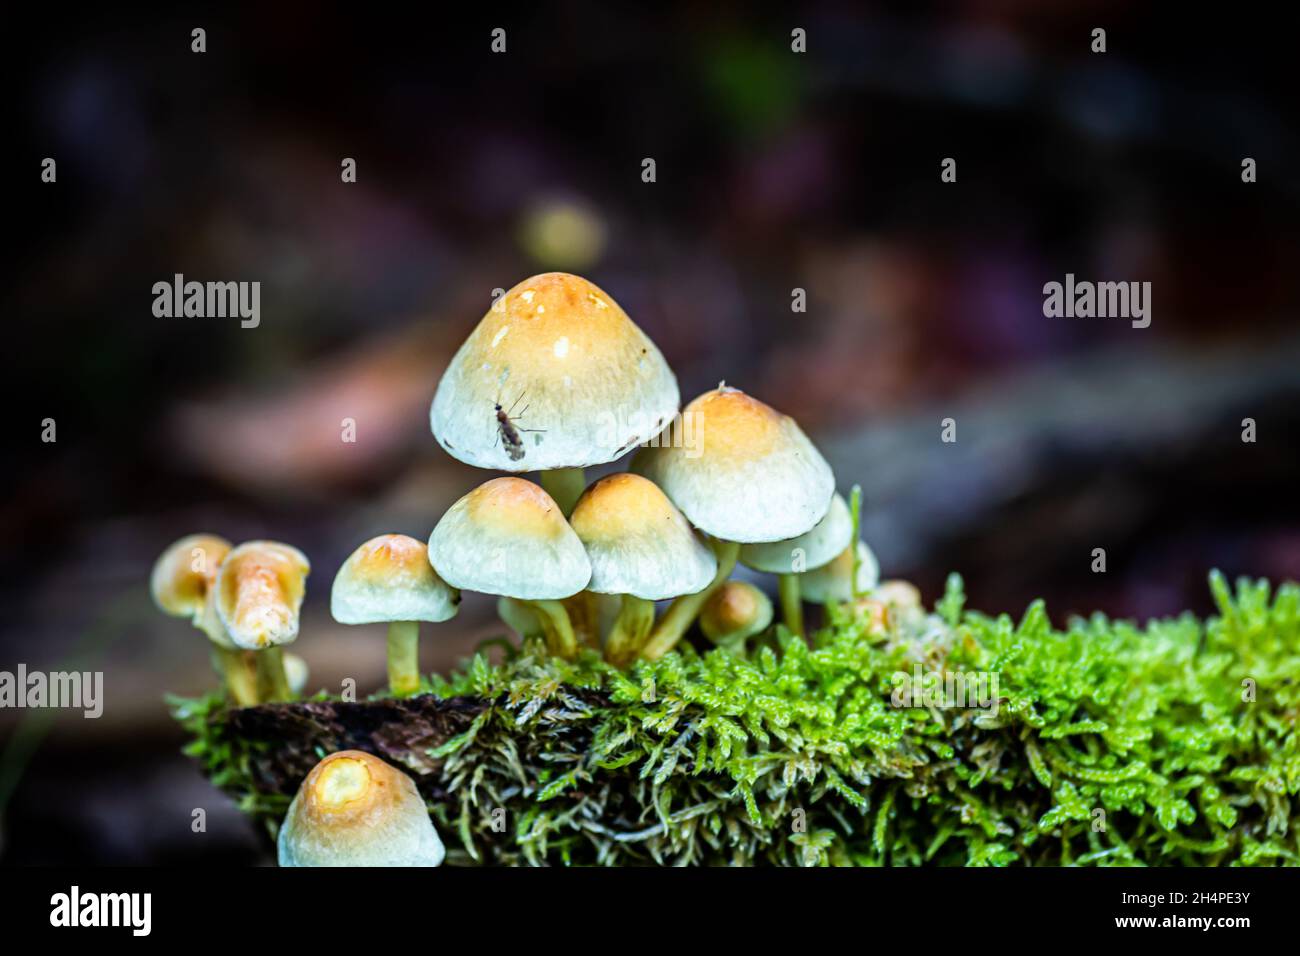 small family of mushrooms Stock Photo